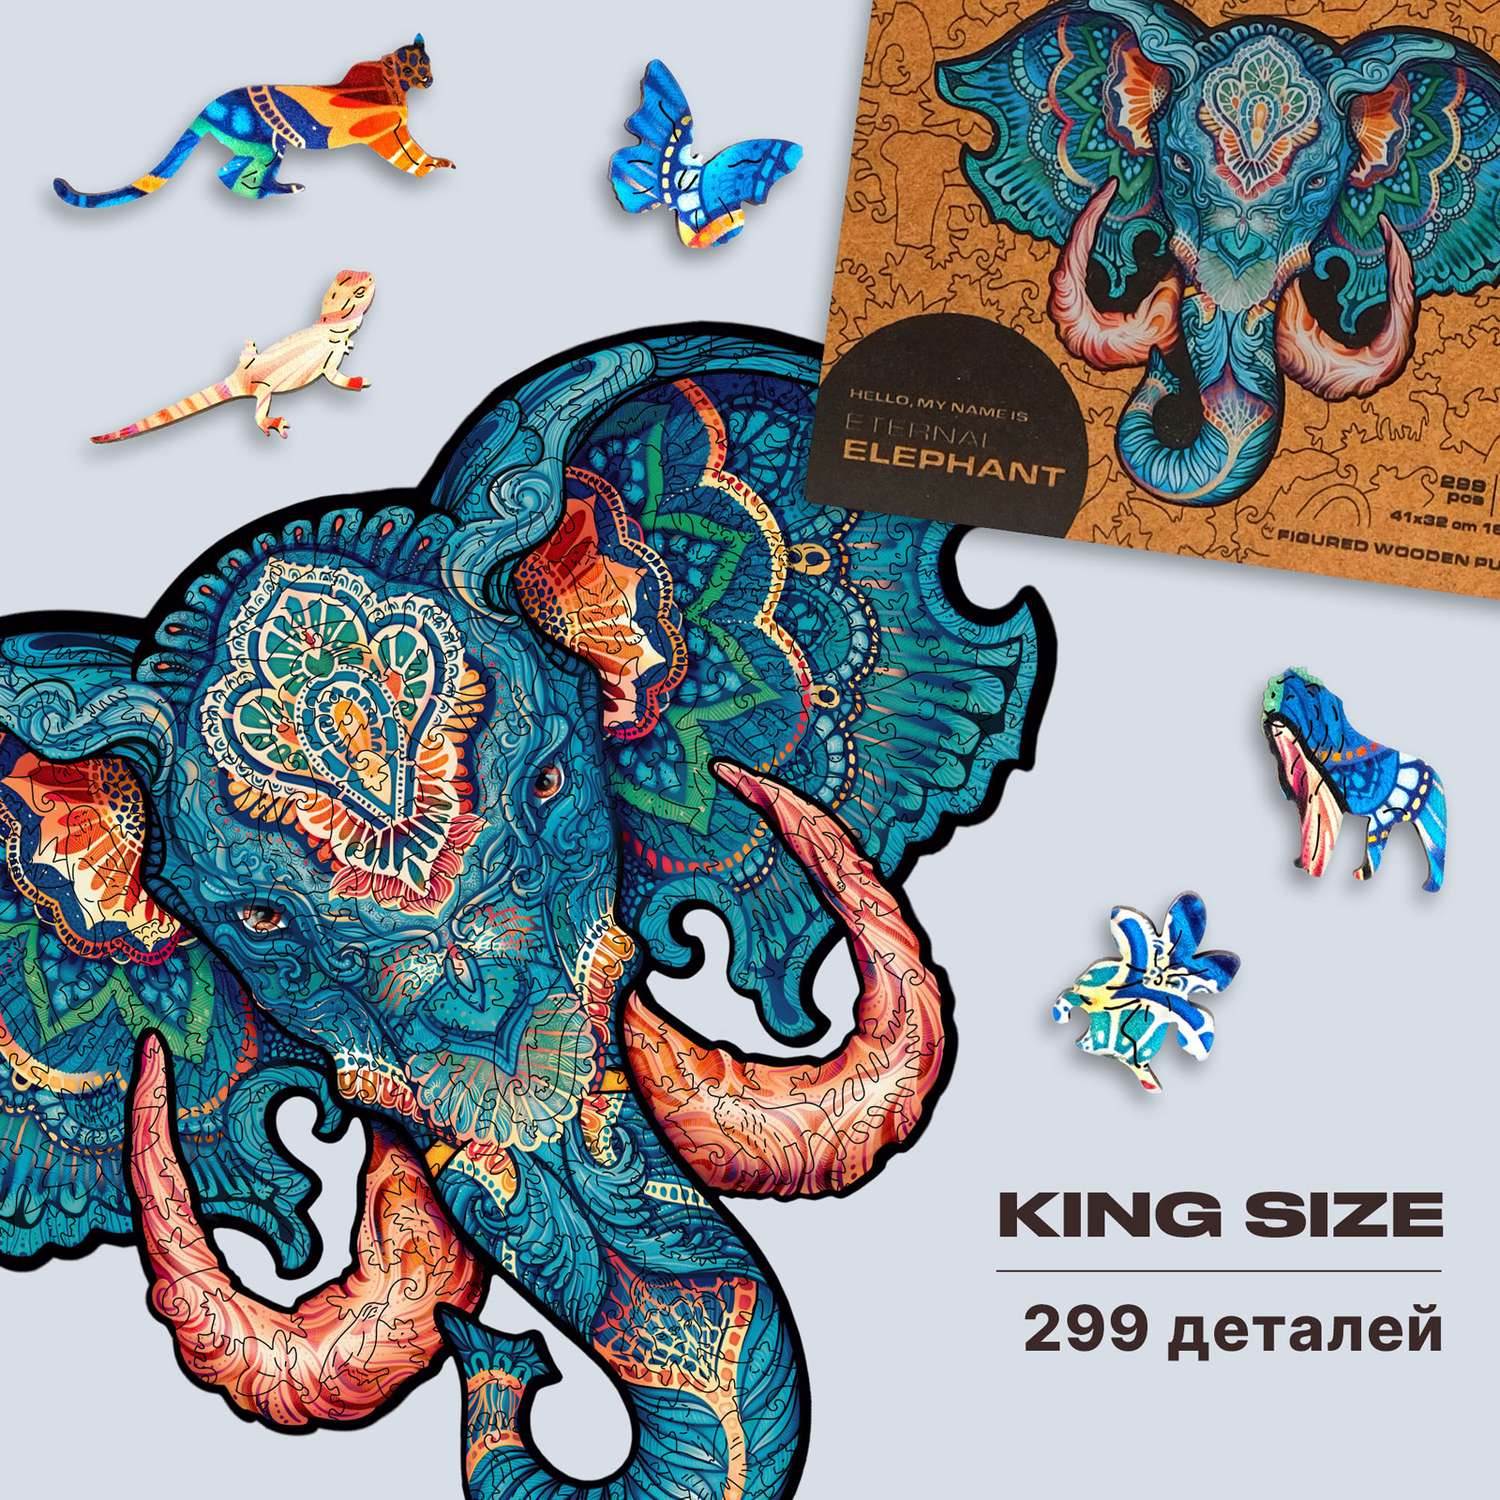 Пазл деревянный UNIDRAGON Вечный Слон размер 41 x 32 см 299 деталей - фото 1